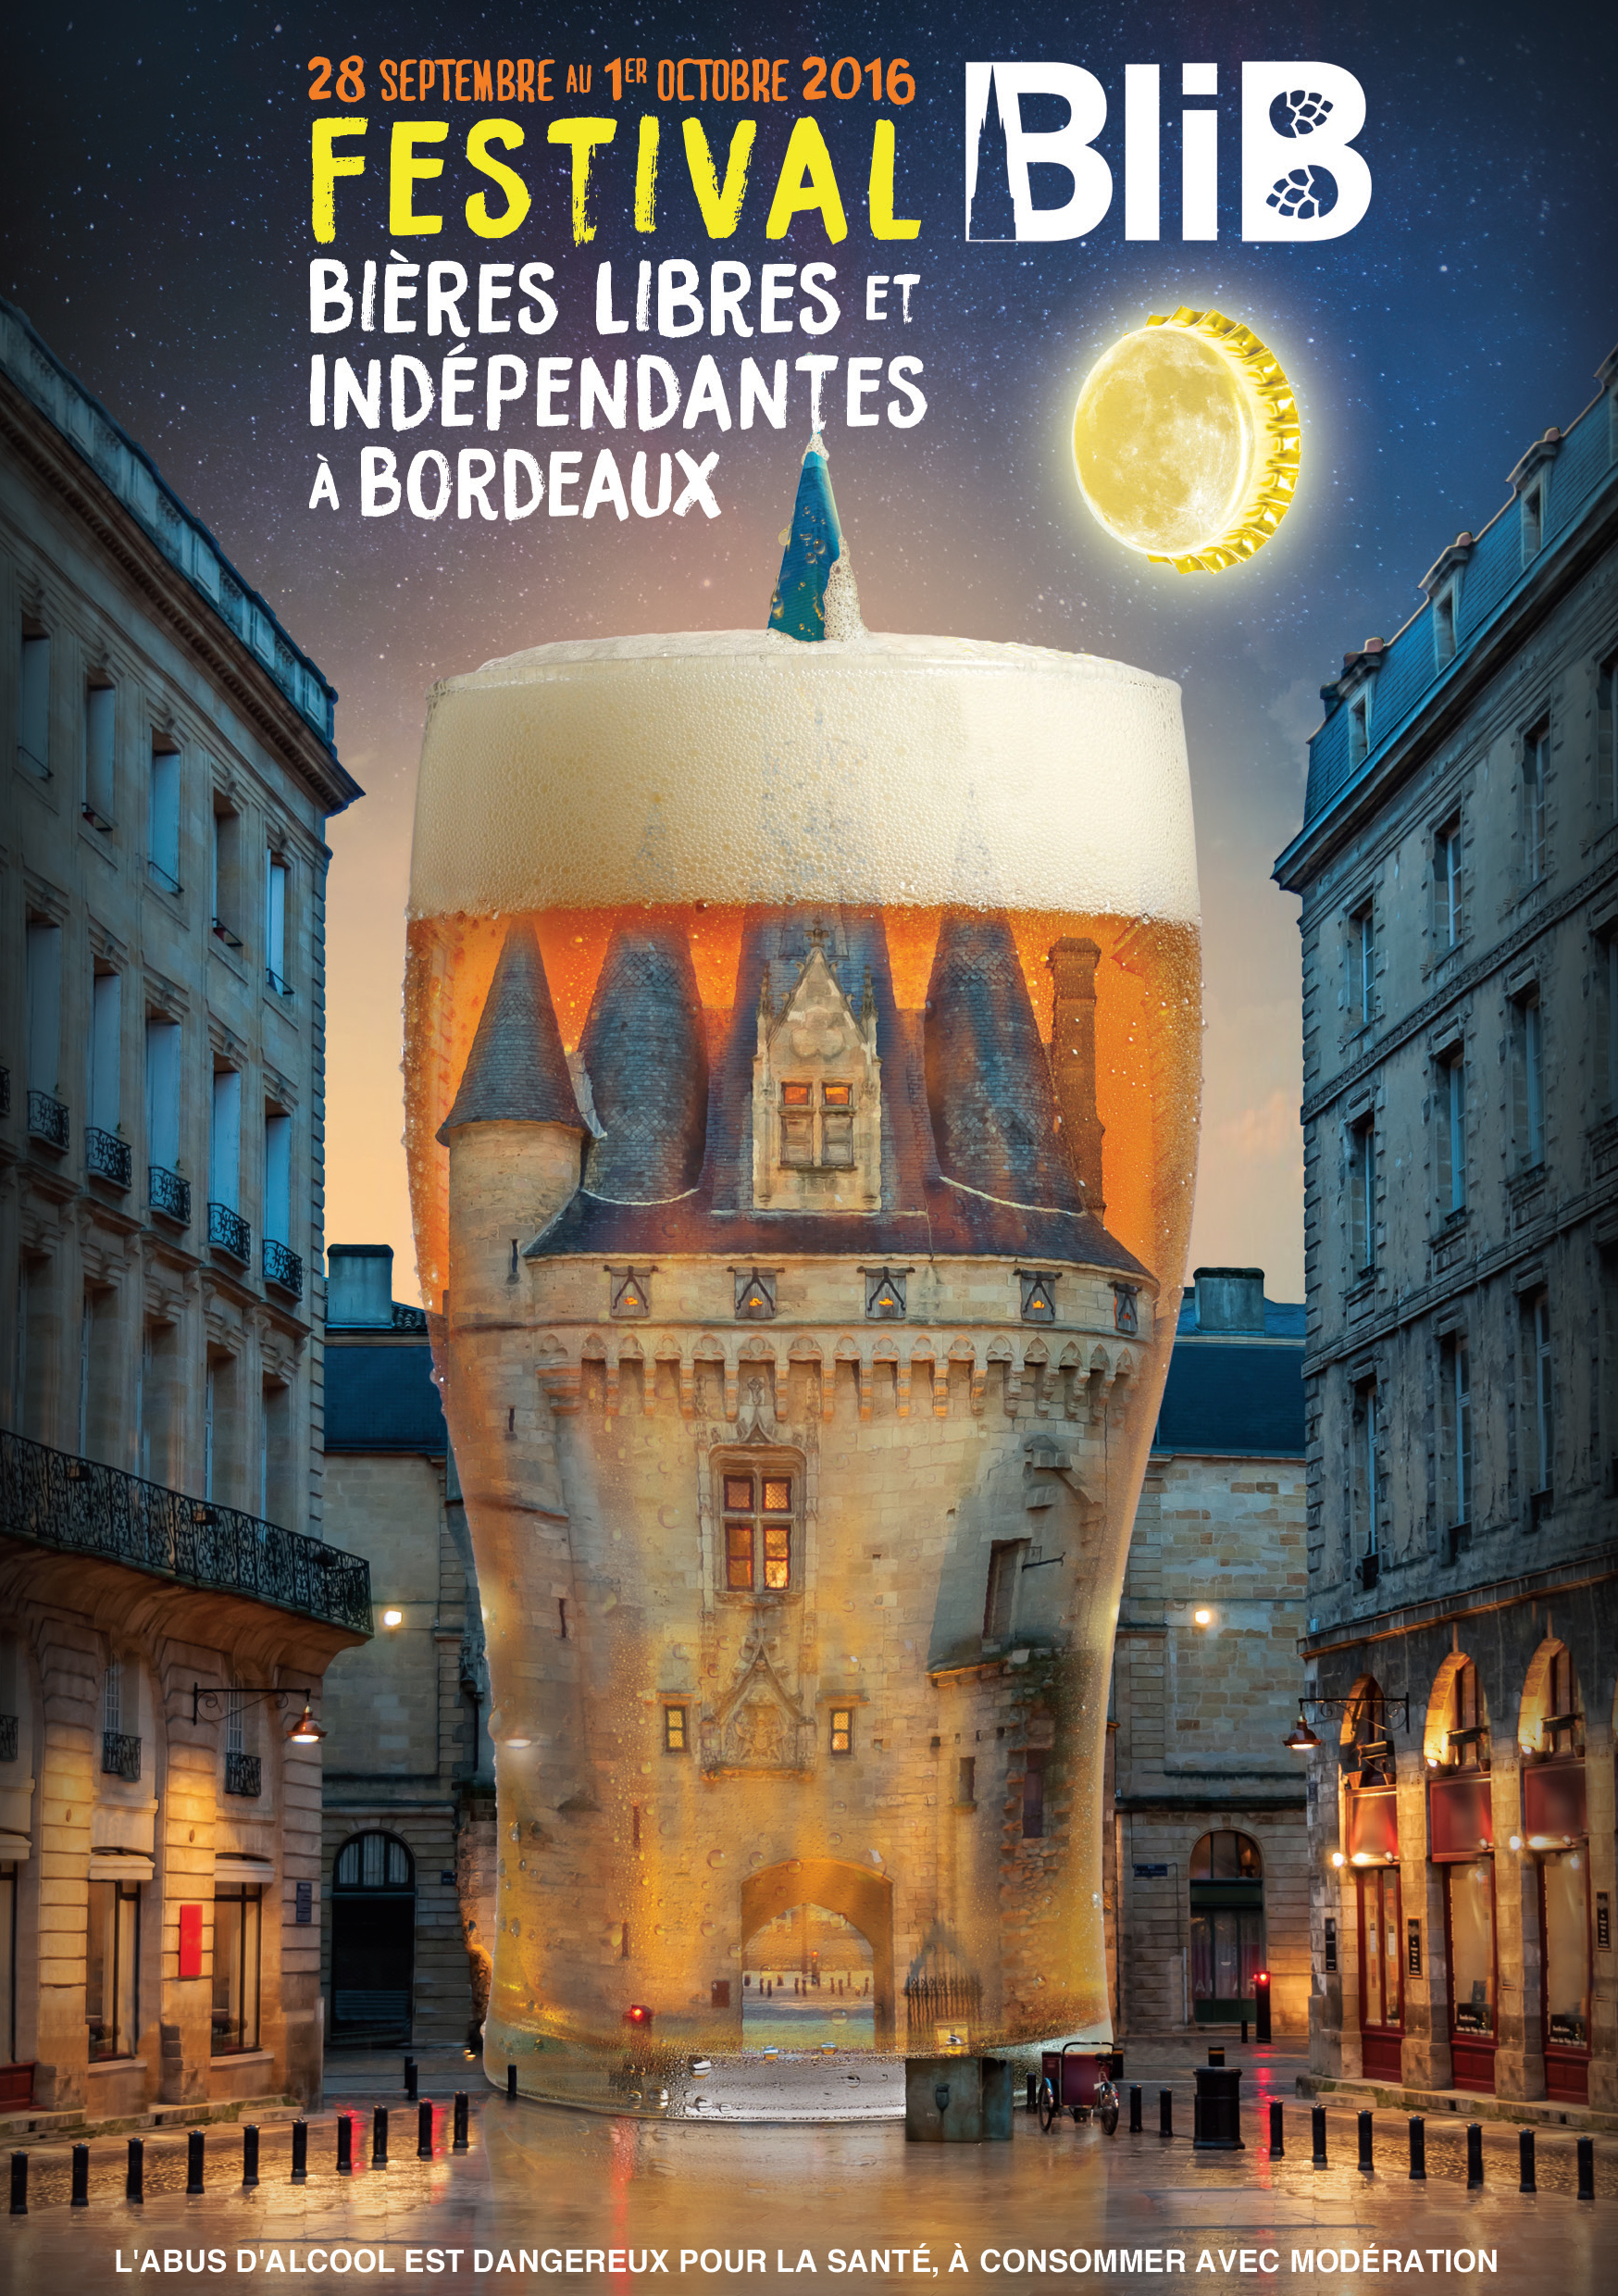 L'affiche de l'édition 2016 de BliB, Bières libres et indépendantes à Bordeaux